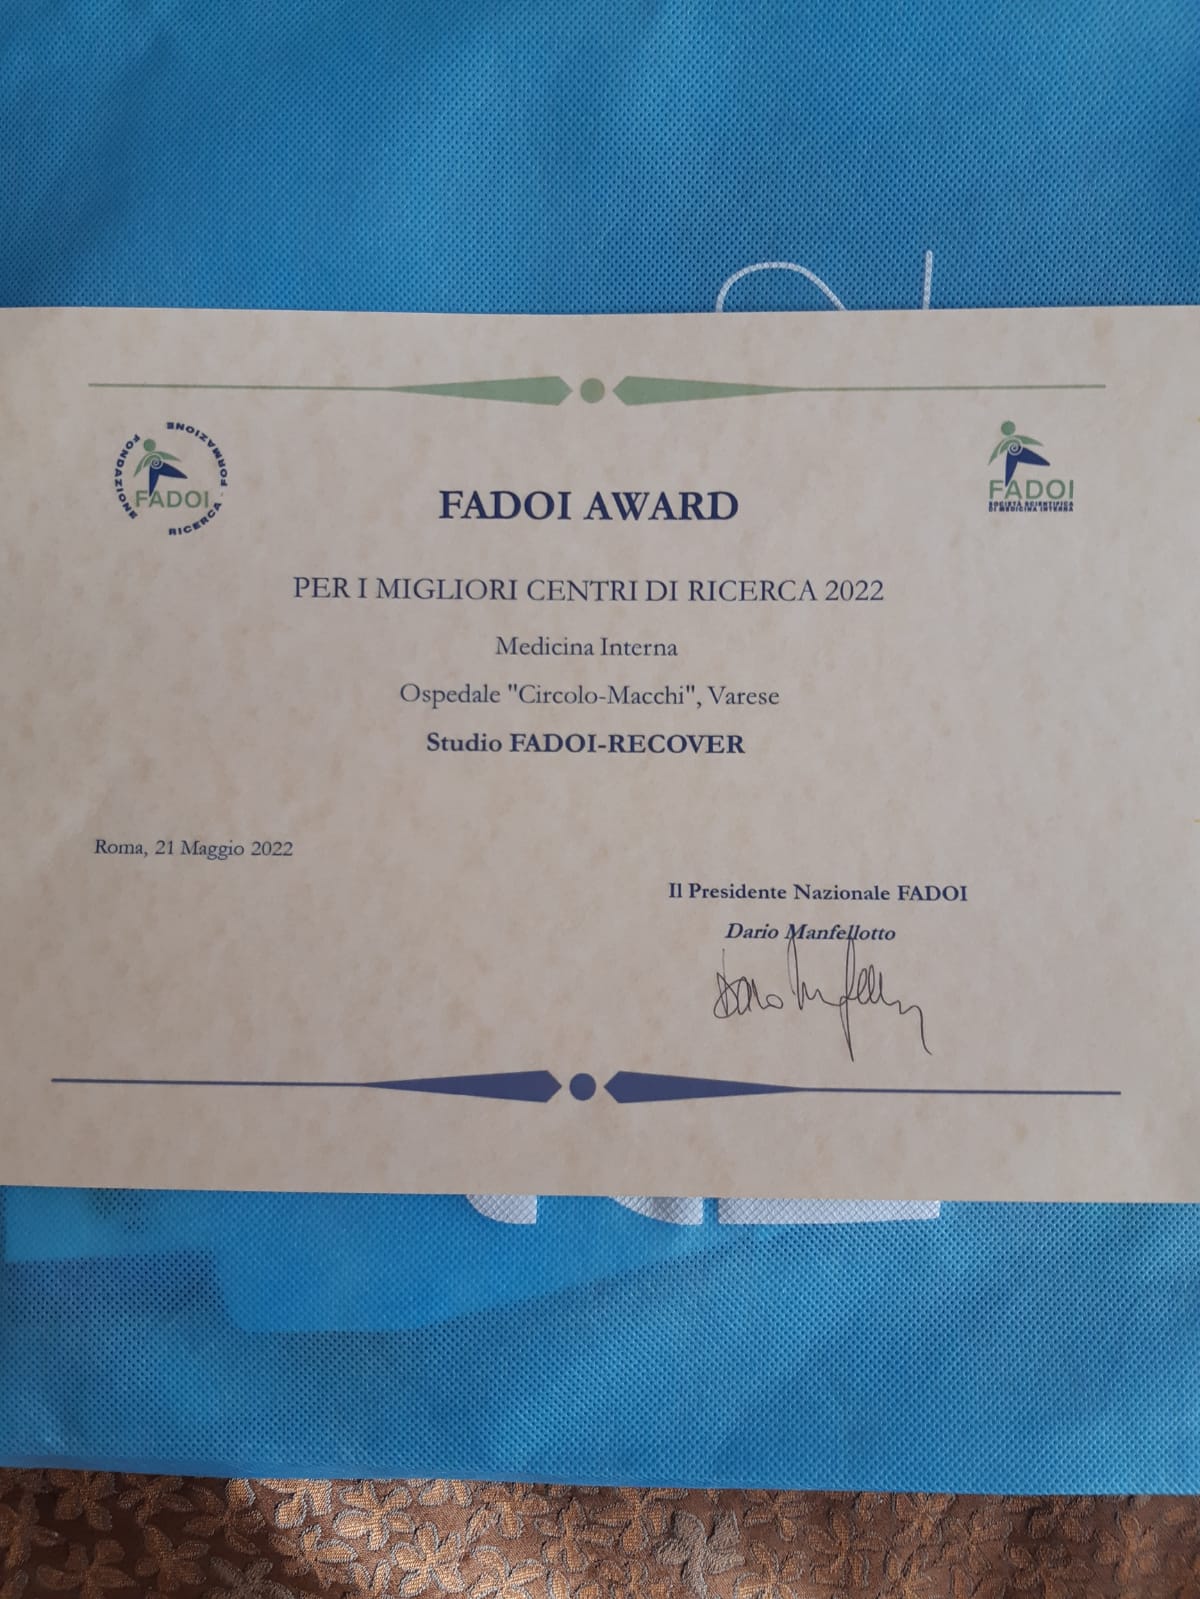  La Medicina interna varesina premiata tra i migliori centri di ricerca Fadoi (Federazione Nazionale dei medici ospedalieri di Medicina Interna). 